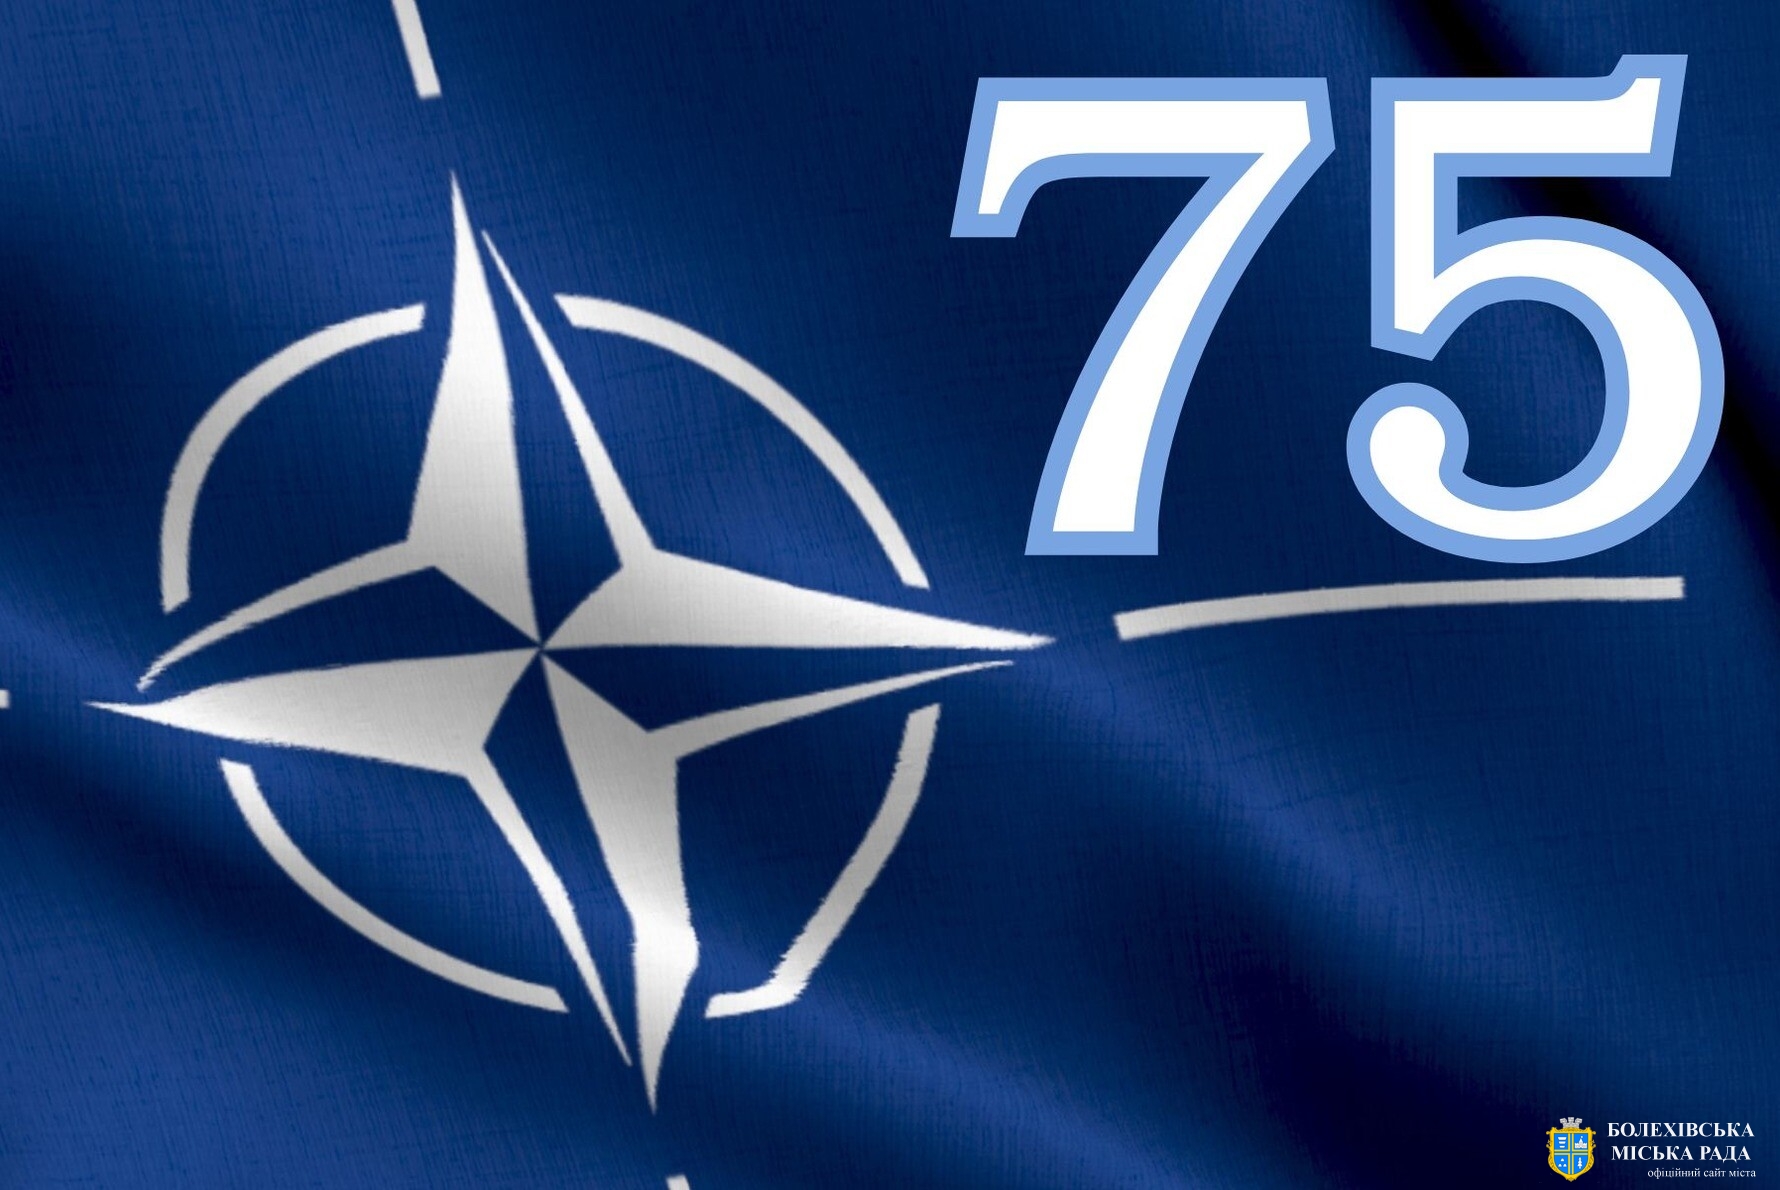 Сьогодні виповнюється 75 років Північноатлантичному альянсу — головному військово-політичному союзу у світі.